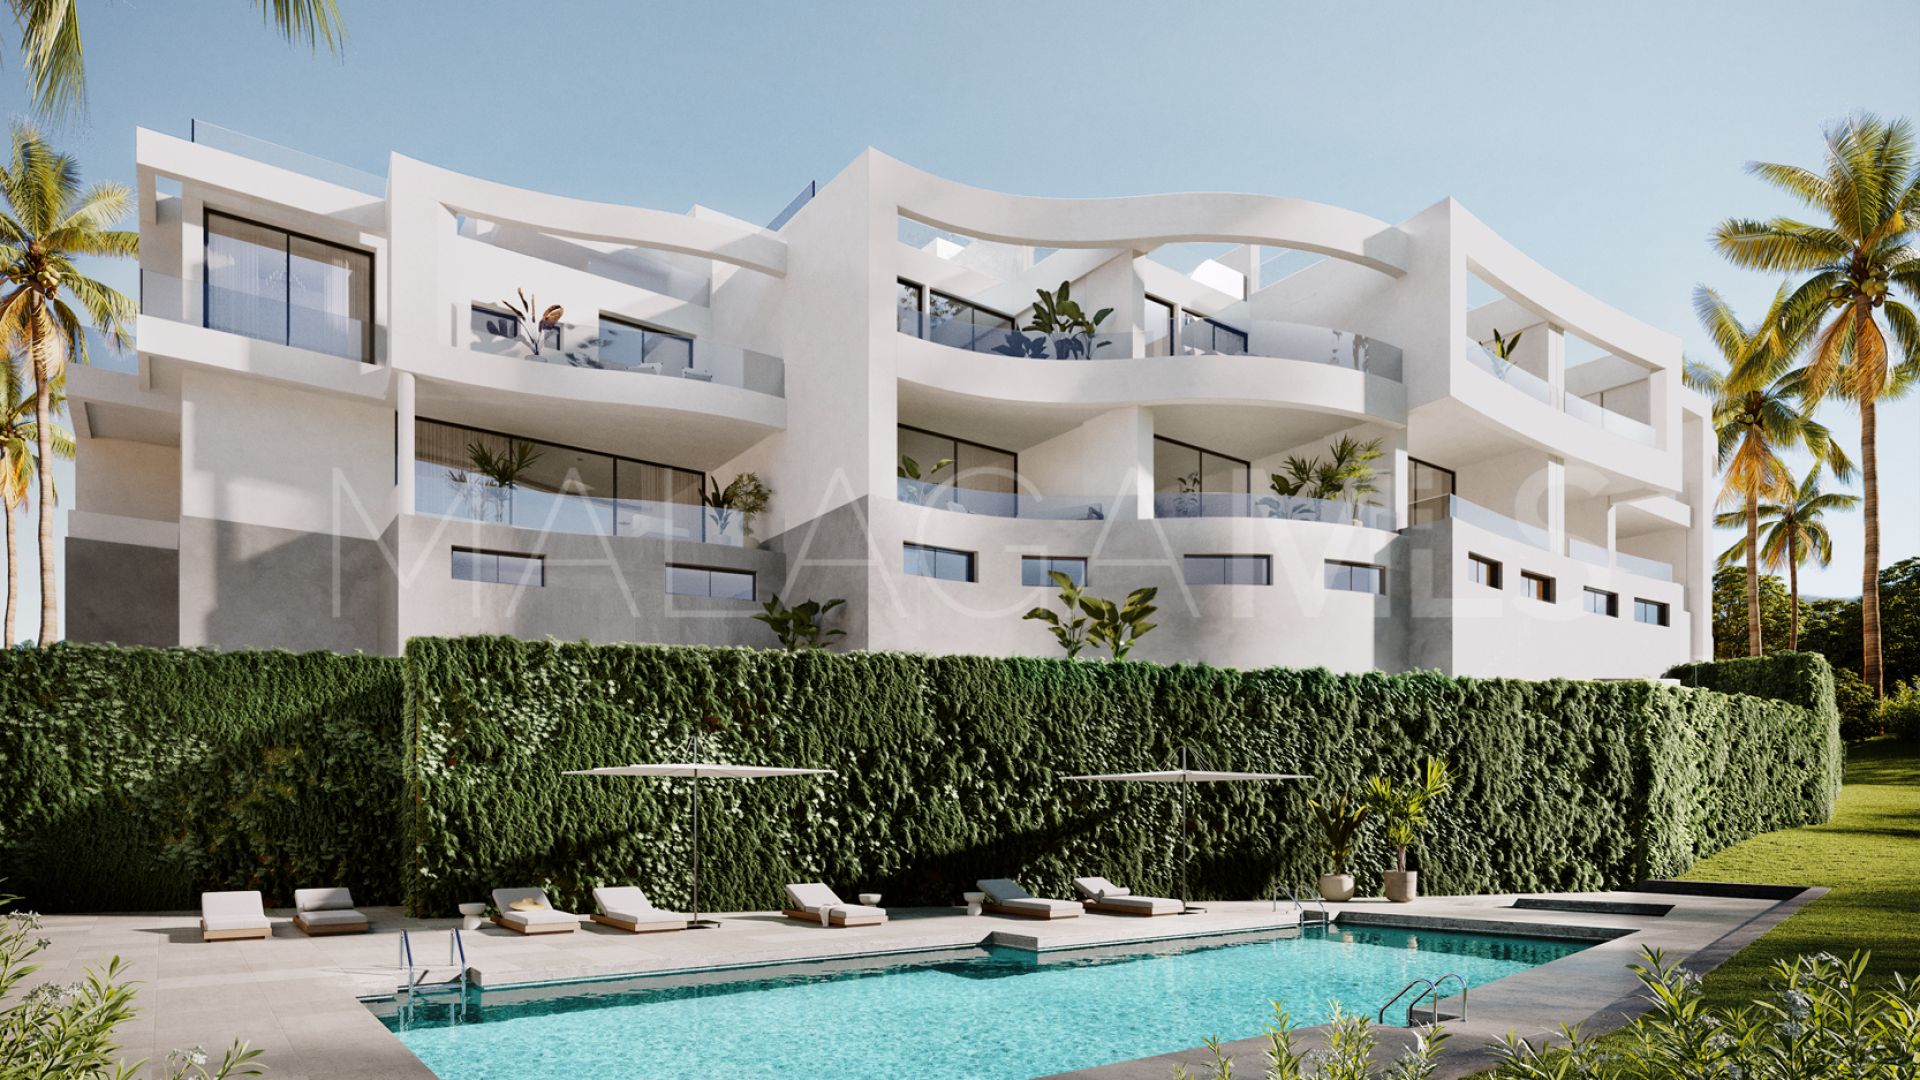 Adosado for sale with 3 bedrooms in Riviera del Sol